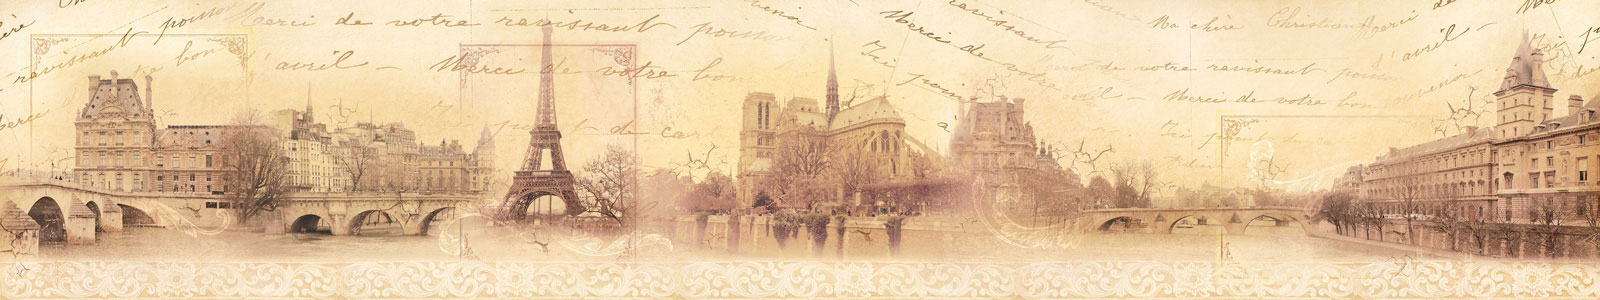 №4749 - Коллаж из винтажных фотографий достопримечательностей Парижа